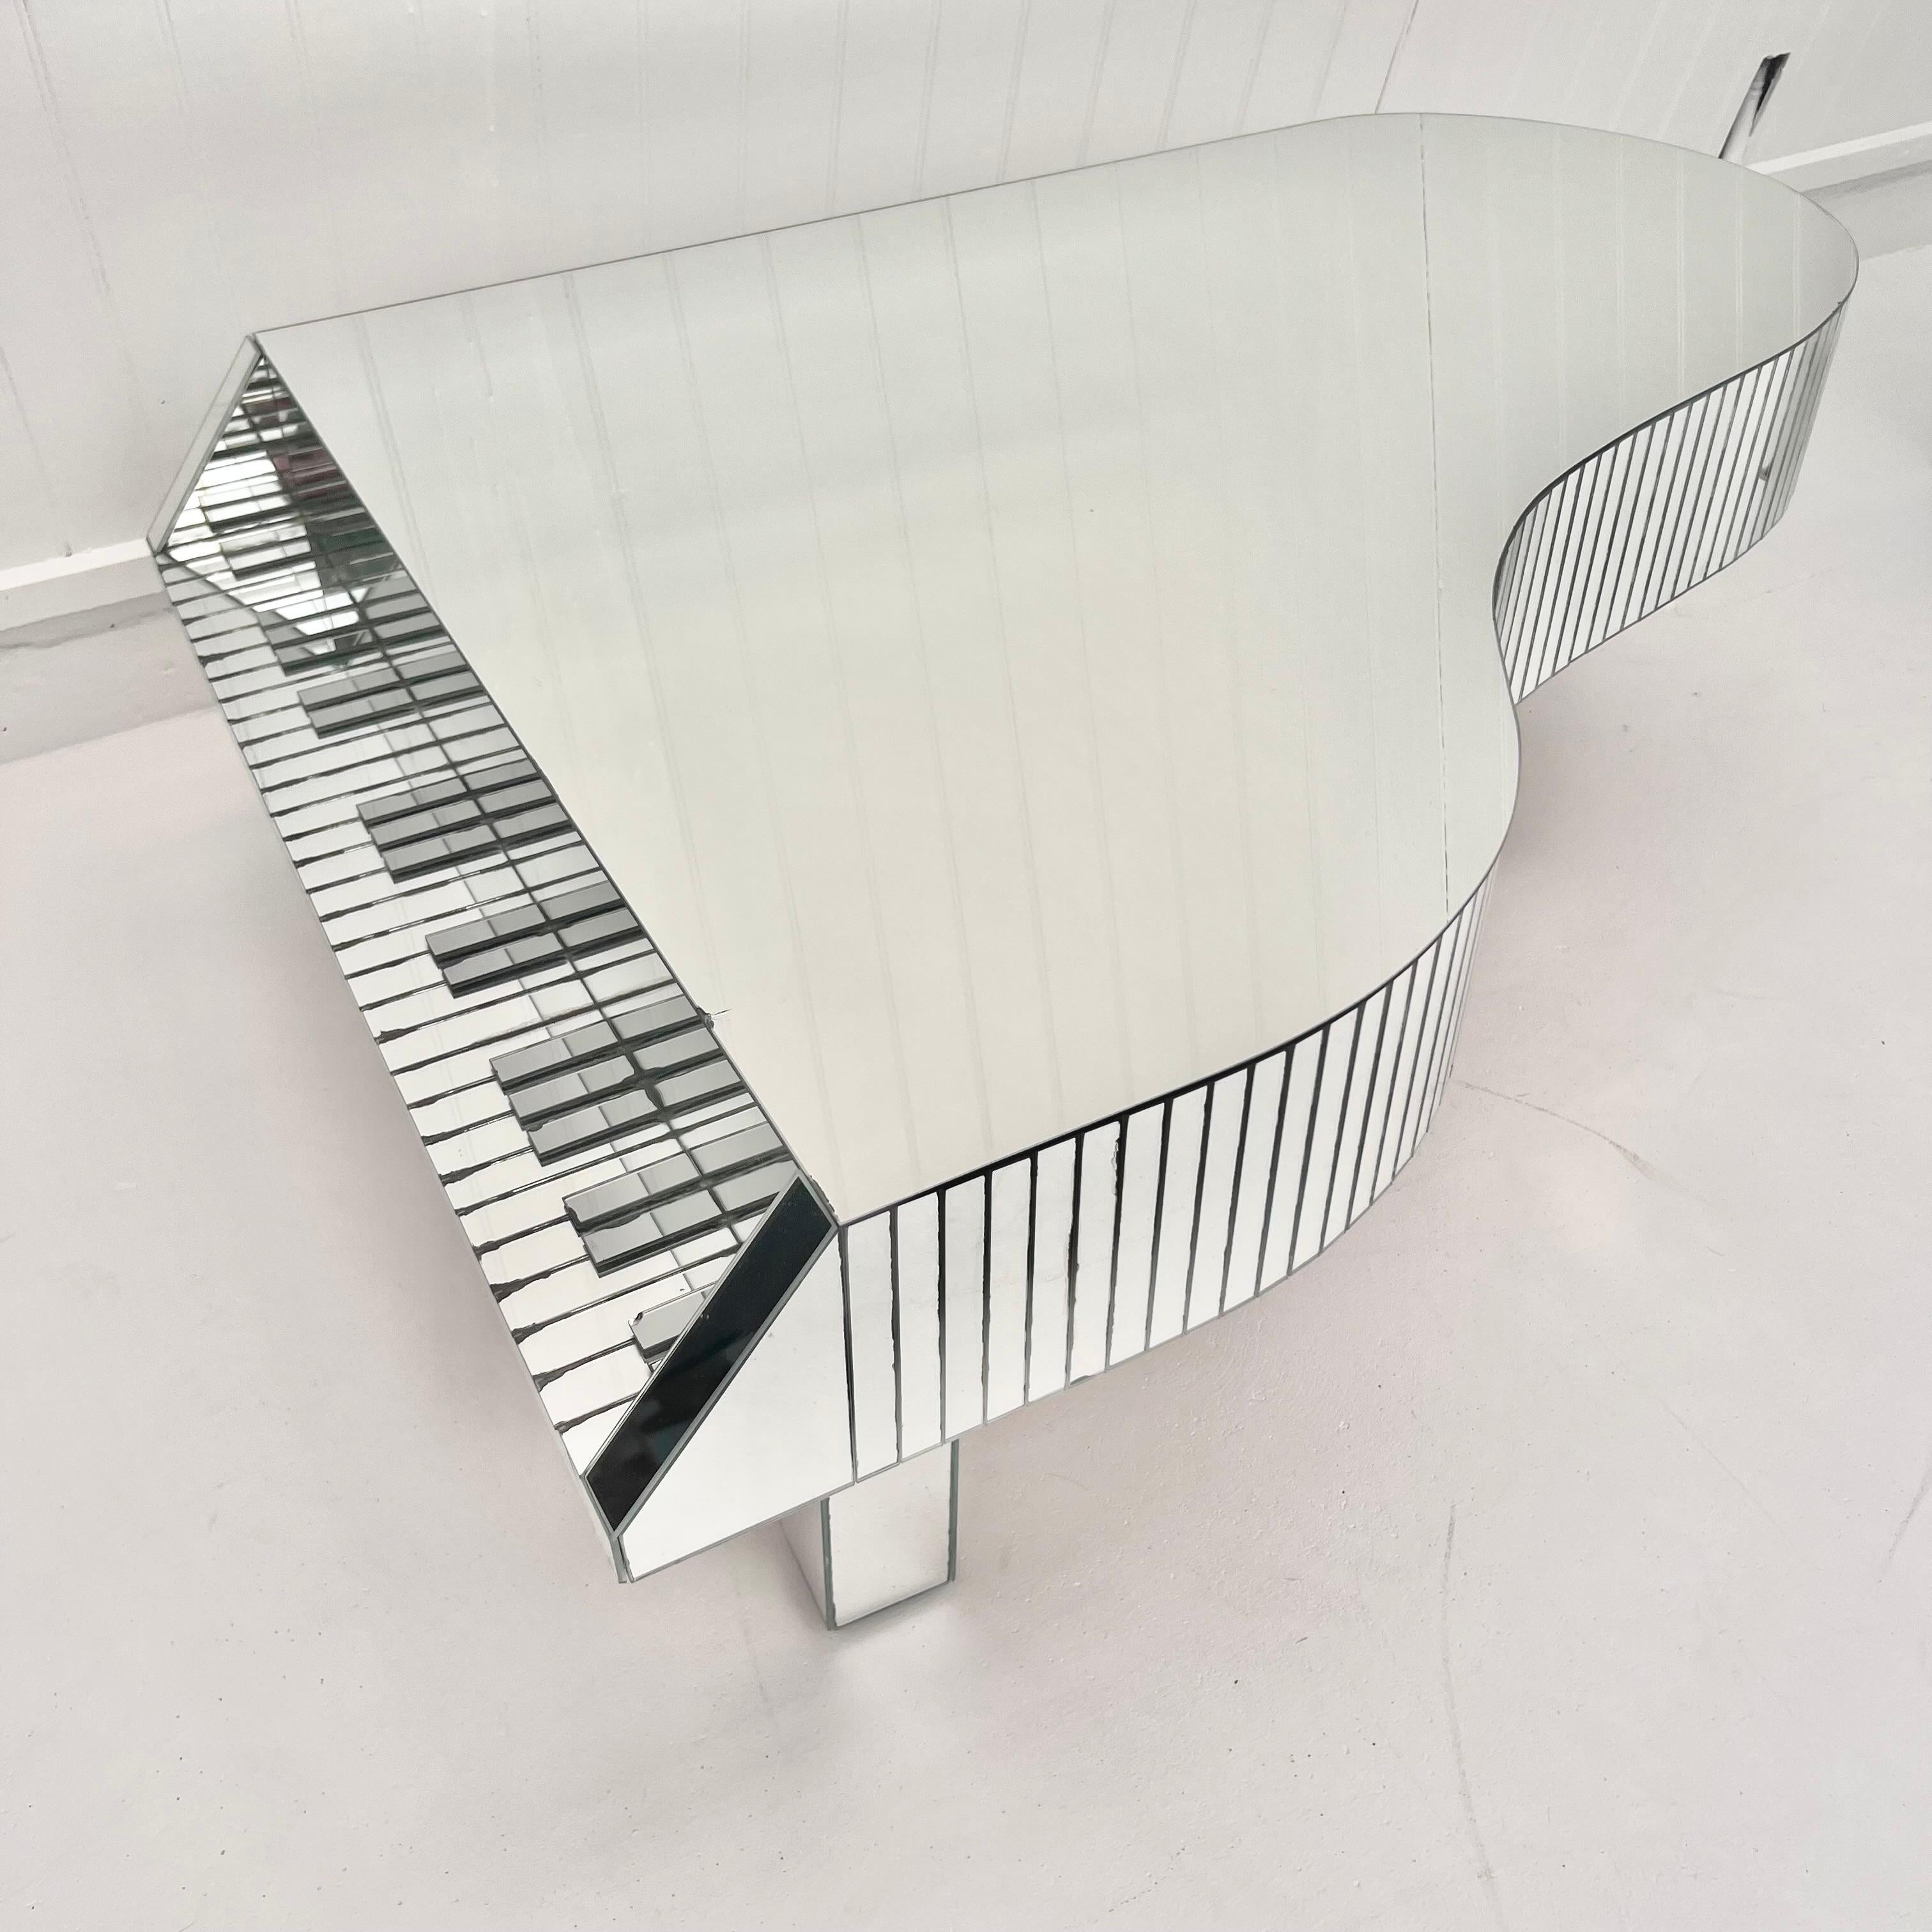 1970s piano